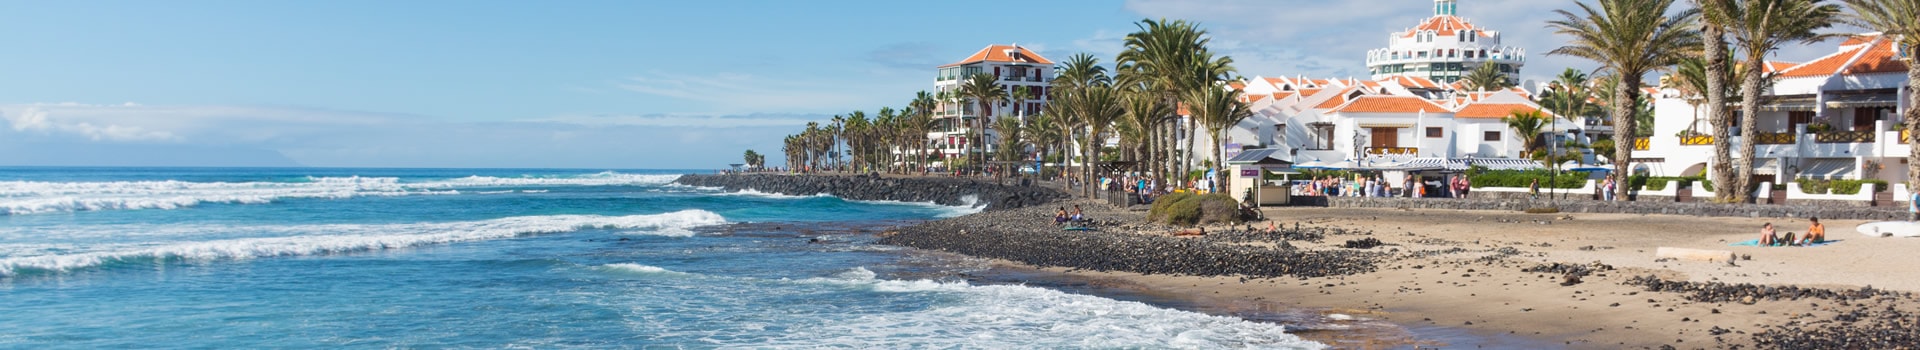 Billets de Bateau de Santa Cruz de Tenerife à Los Cristianos (Tenerife)